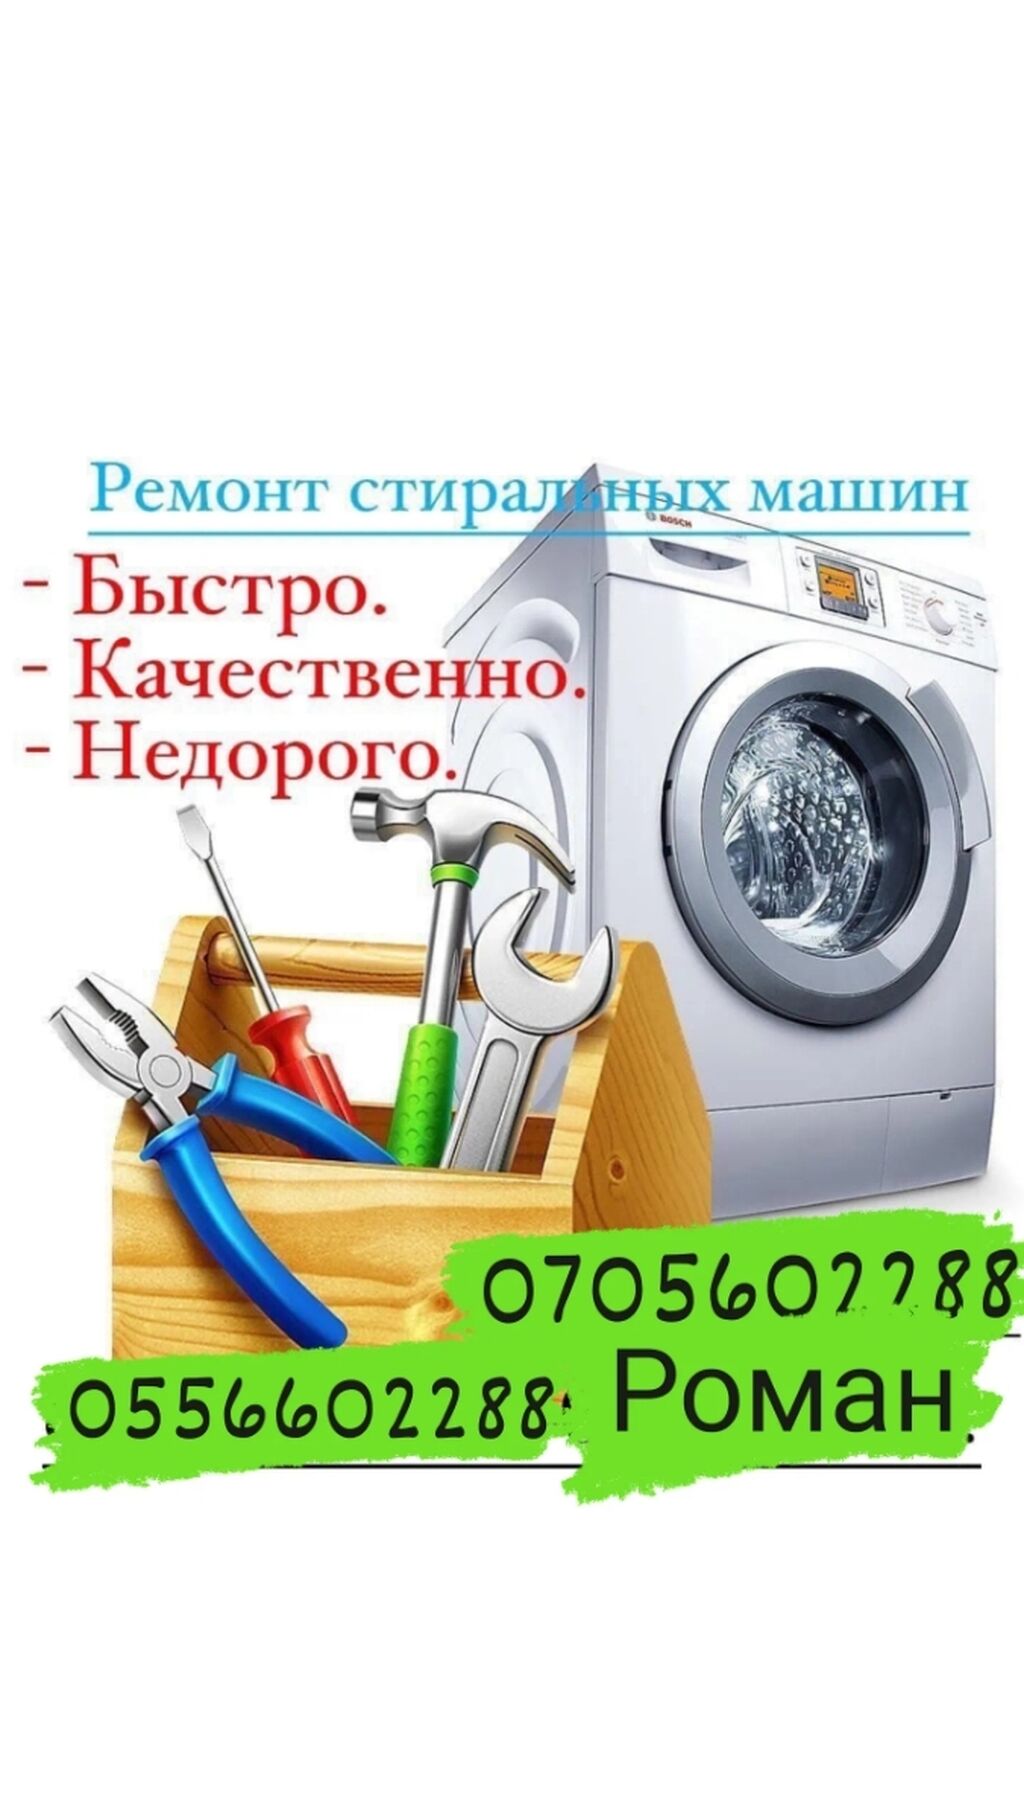 Stir ремонт стиральных машин. Ремонт стиральных машин в Бишкеке. Жердеш ру ремонт стиральных машин.